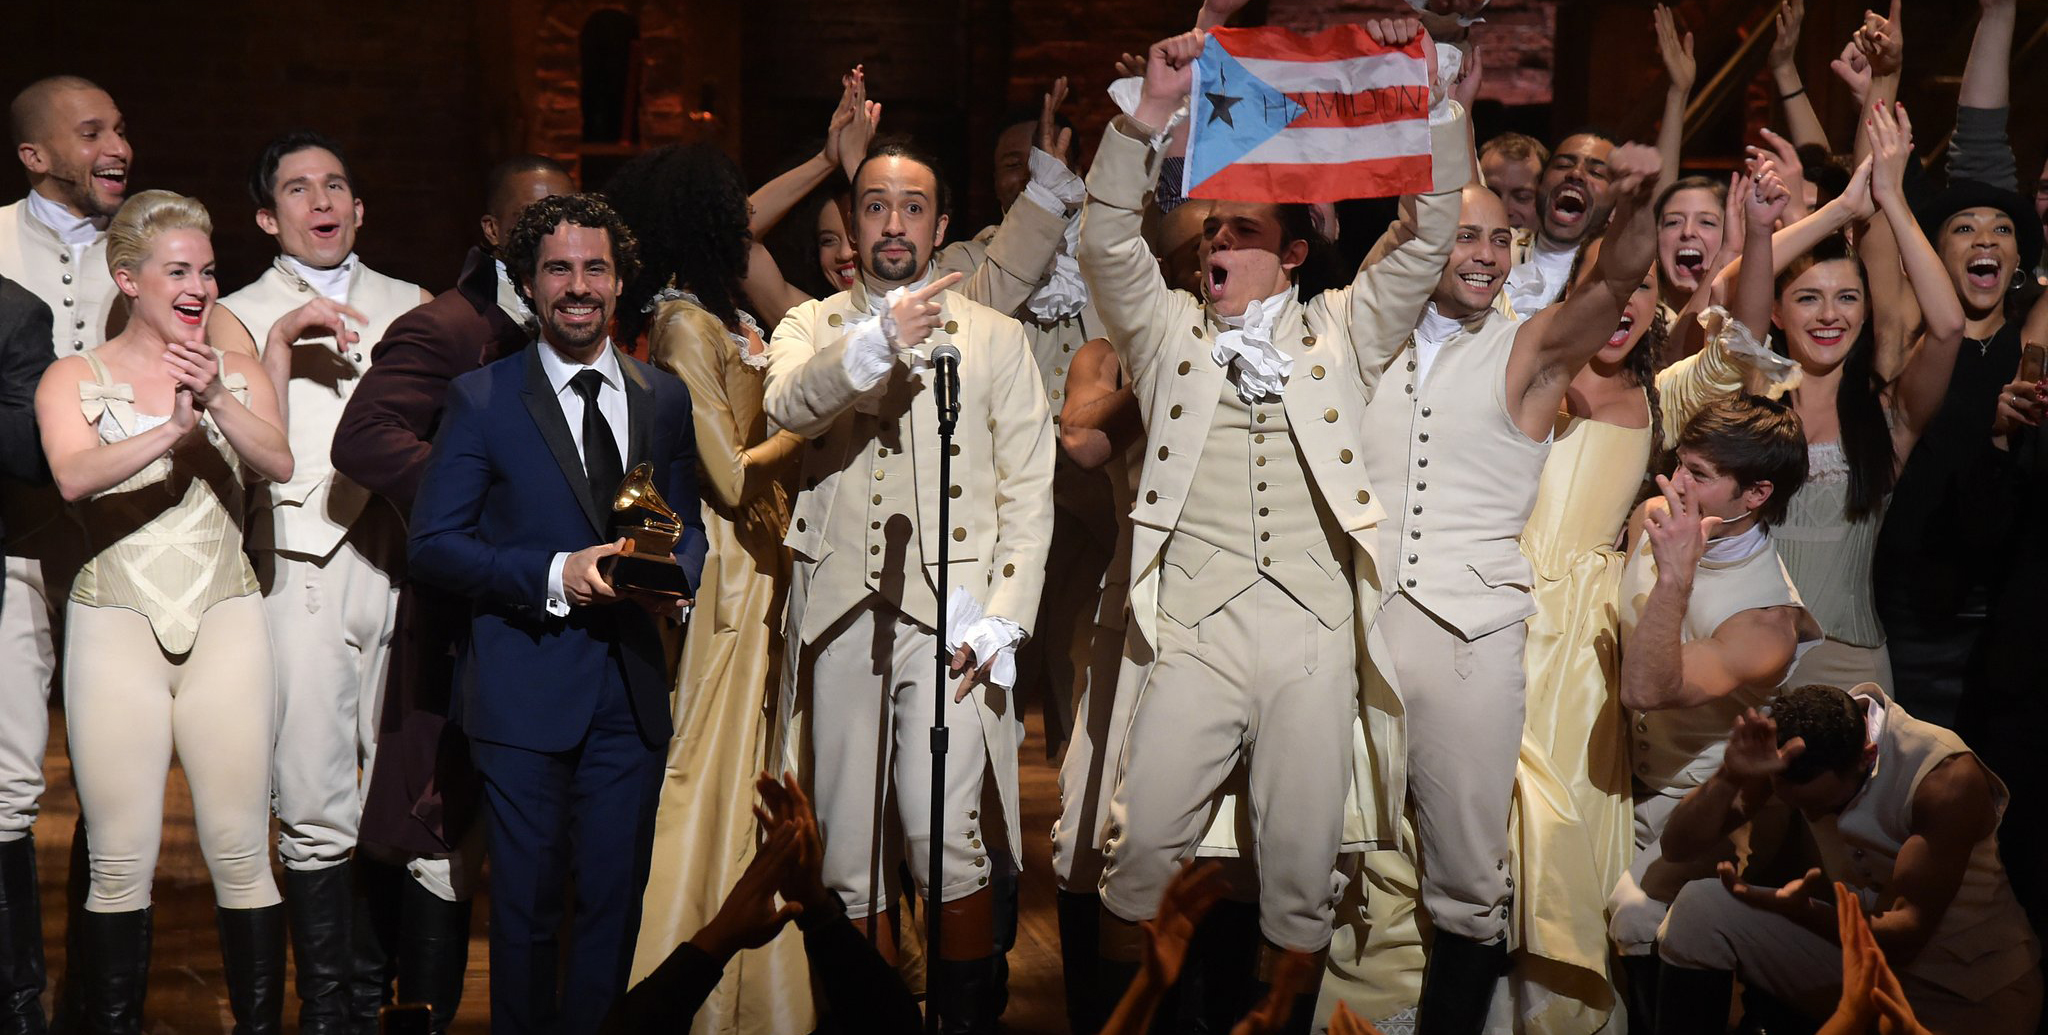 Residente participa en el nuevo video de Hamilton, el gran éxito de Broadway